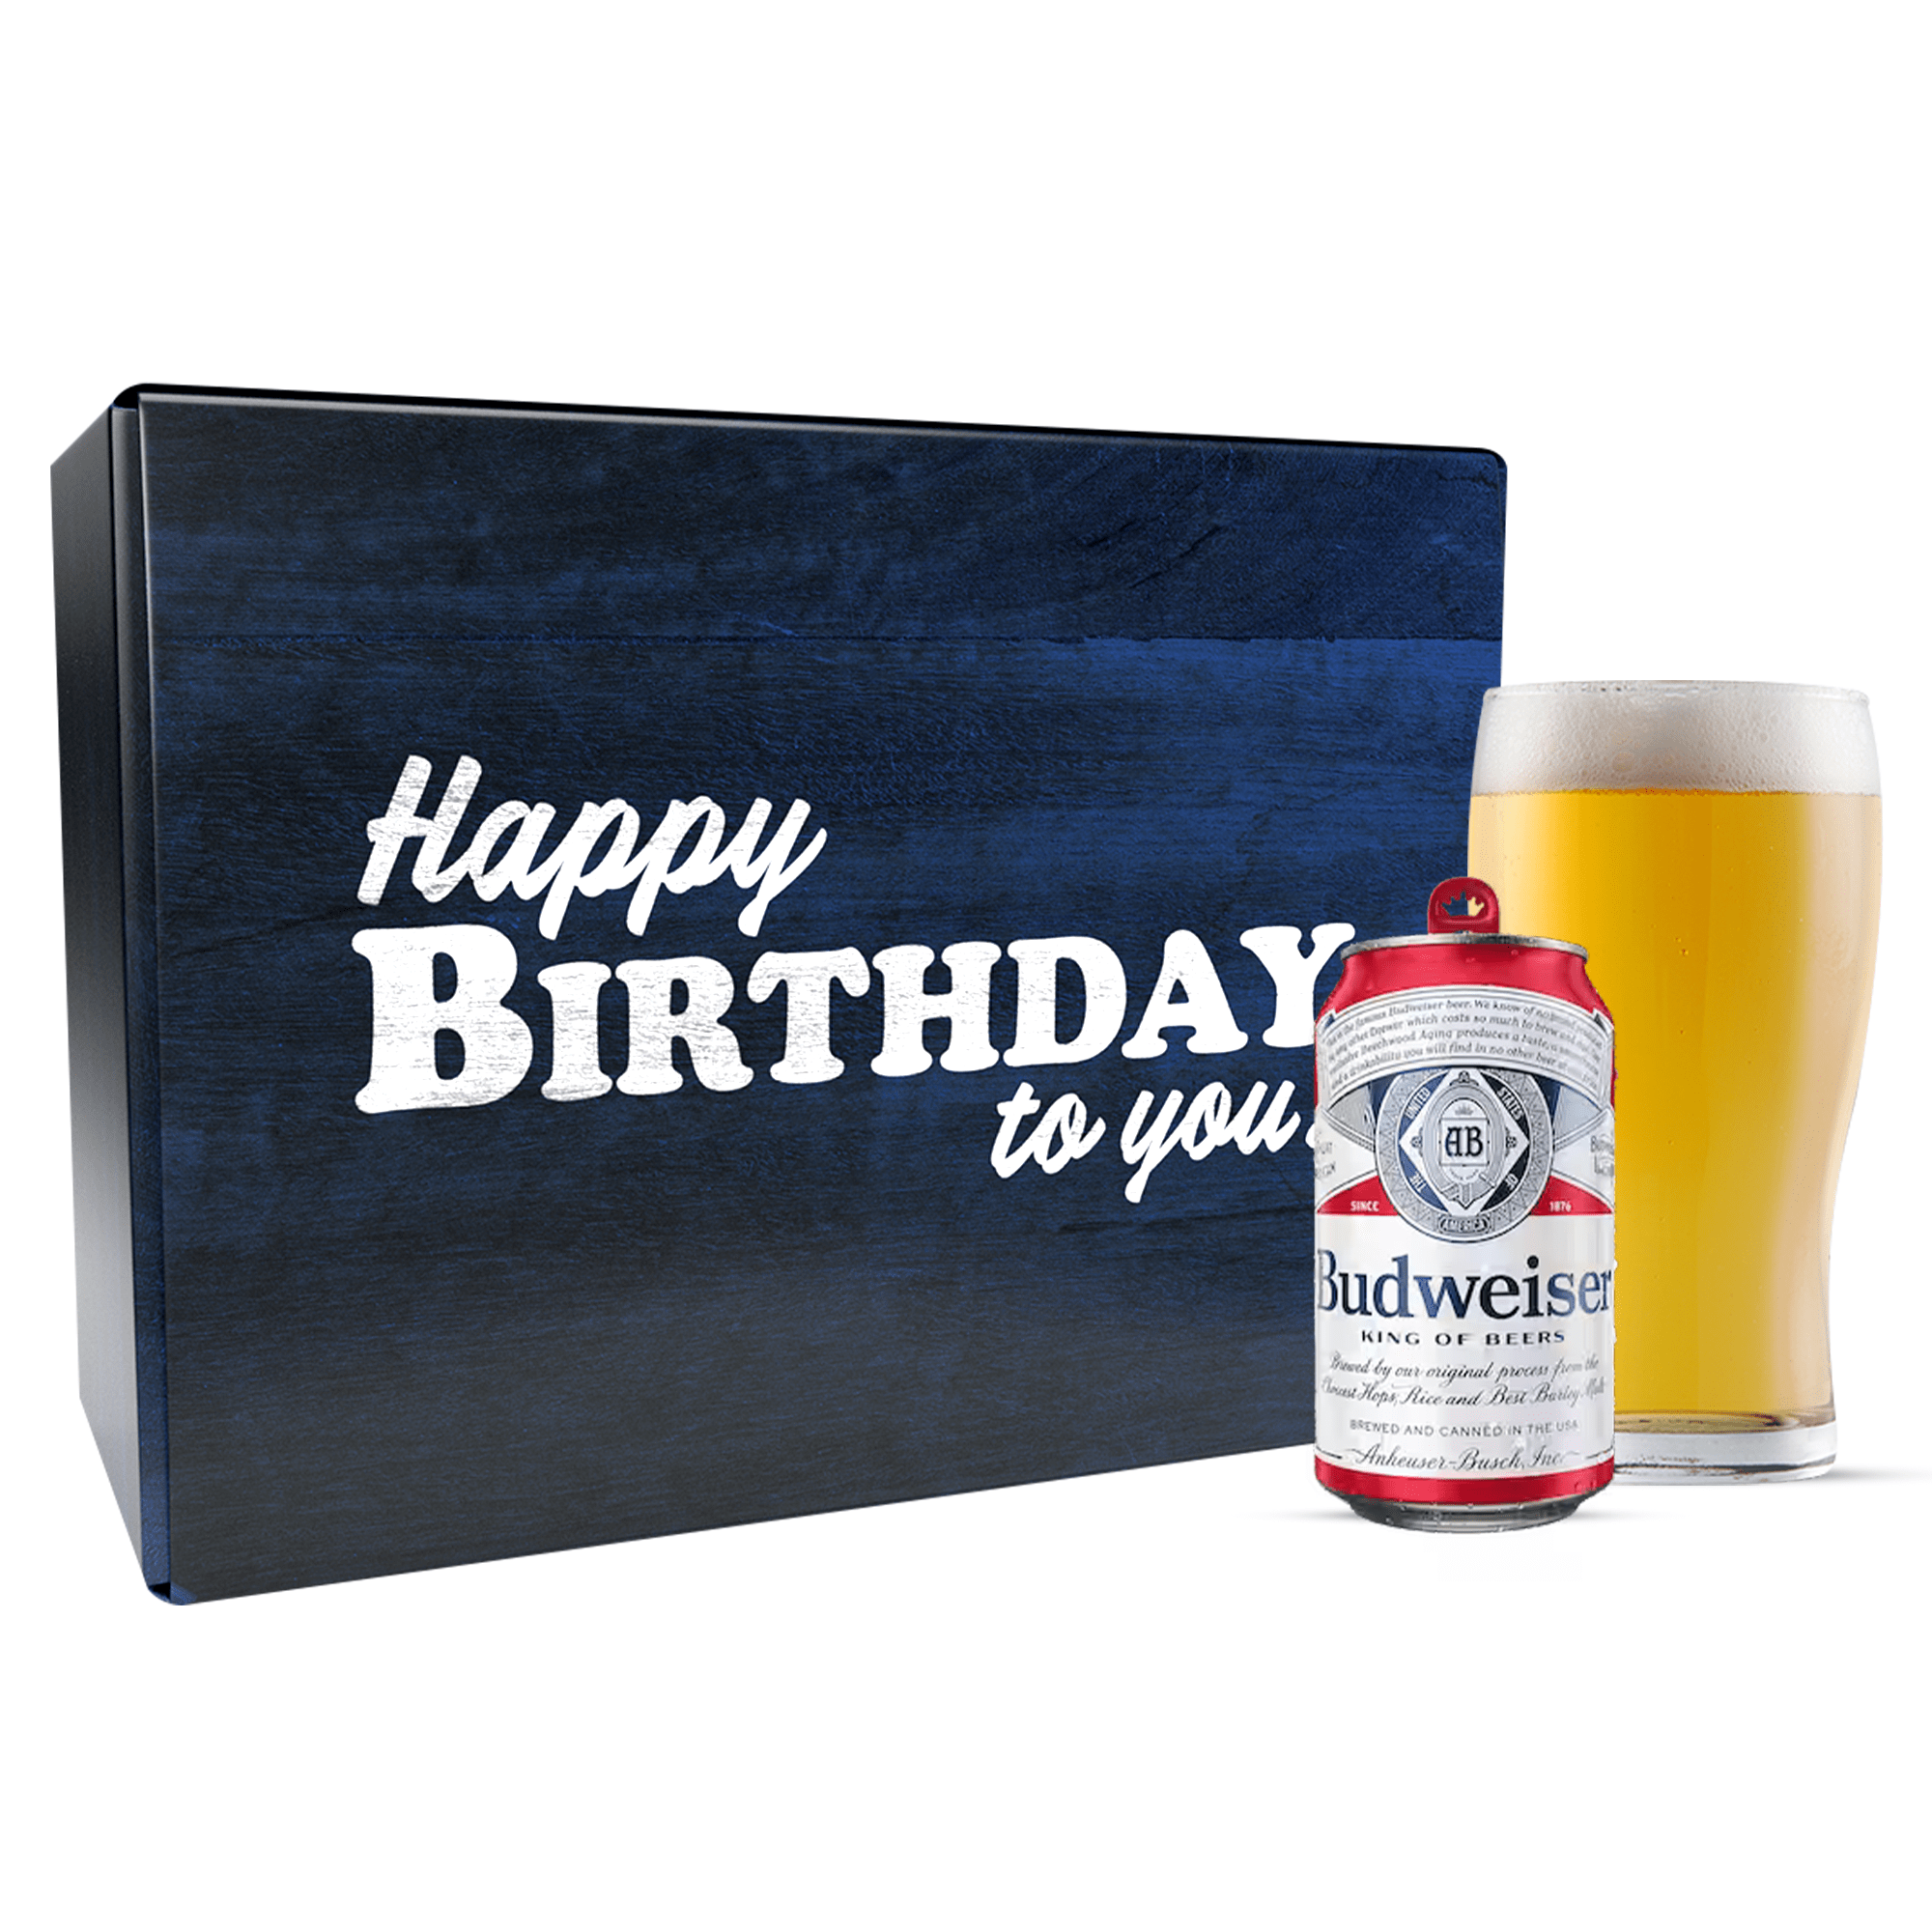 Budweiser Happy Birthday